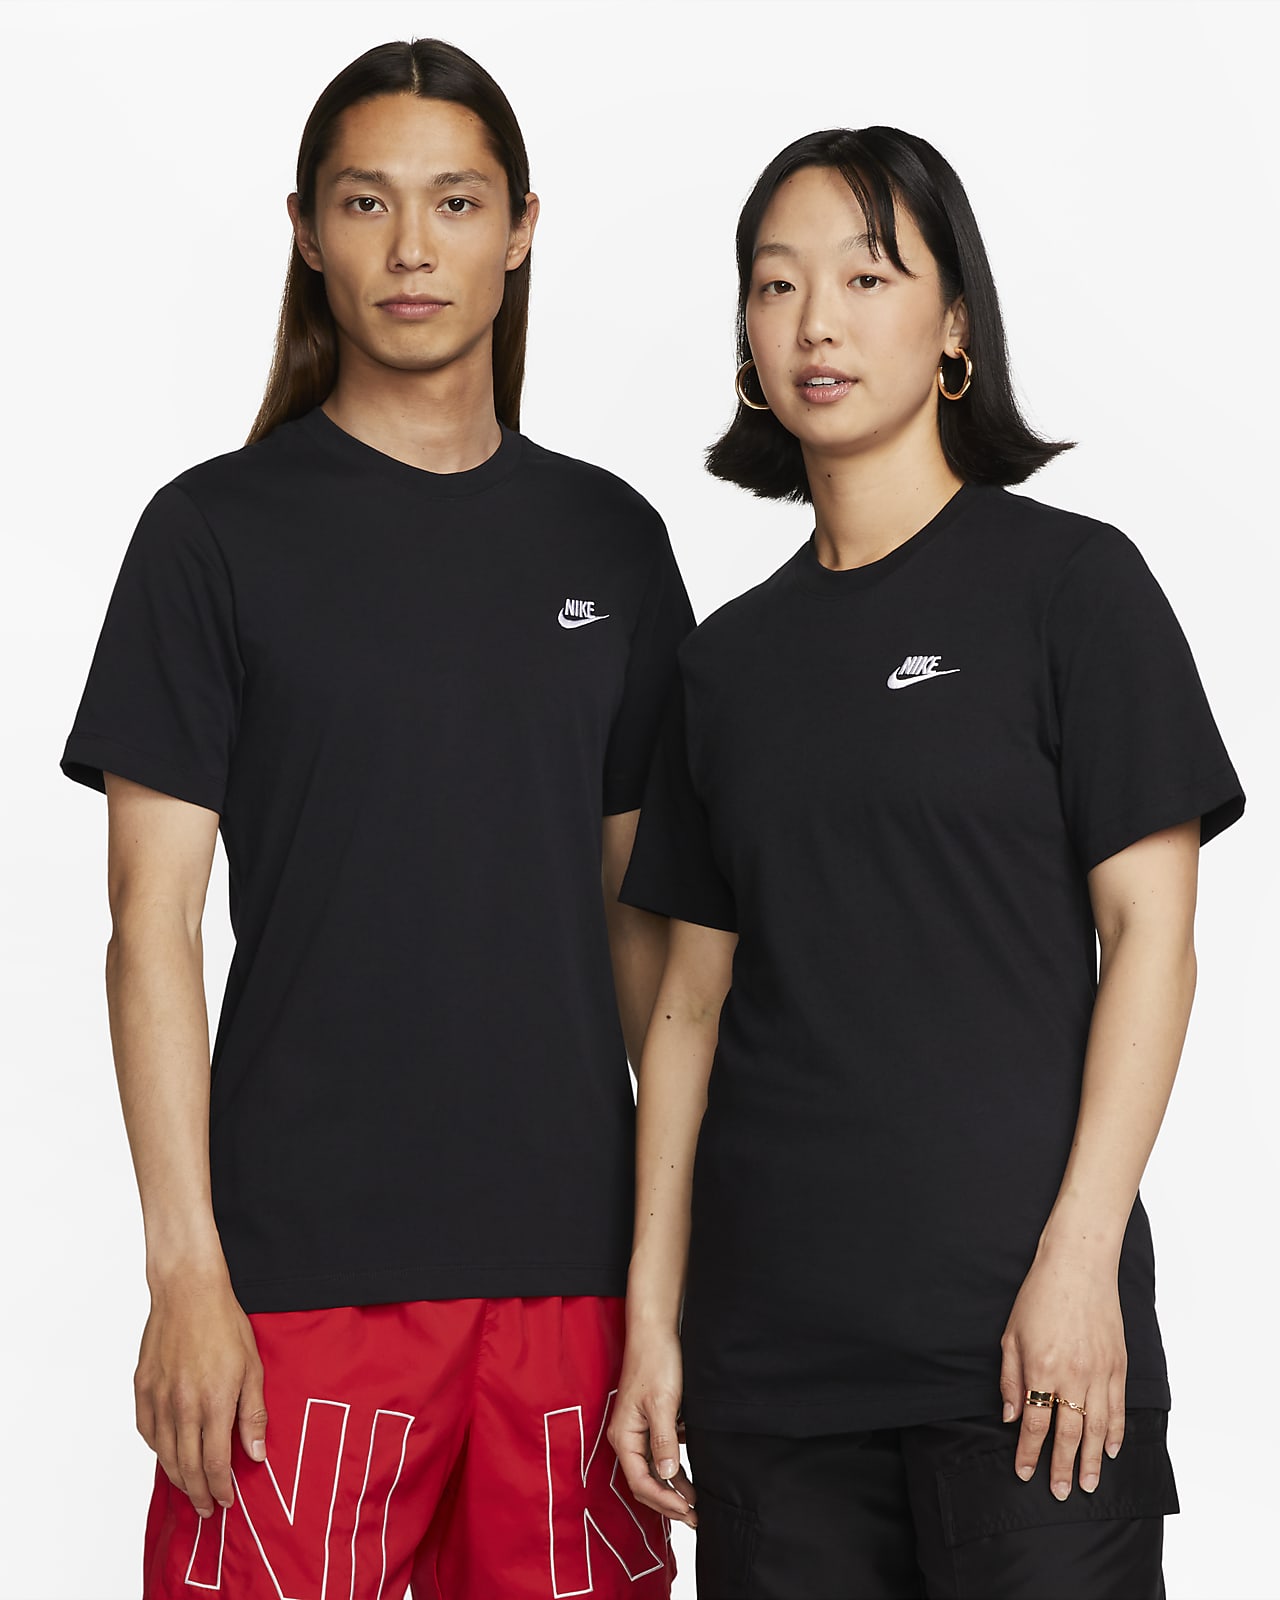 NIKE公式】ナイキ スポーツウェア クラブ メンズ Tシャツ.オンラインストア (通販サイト)